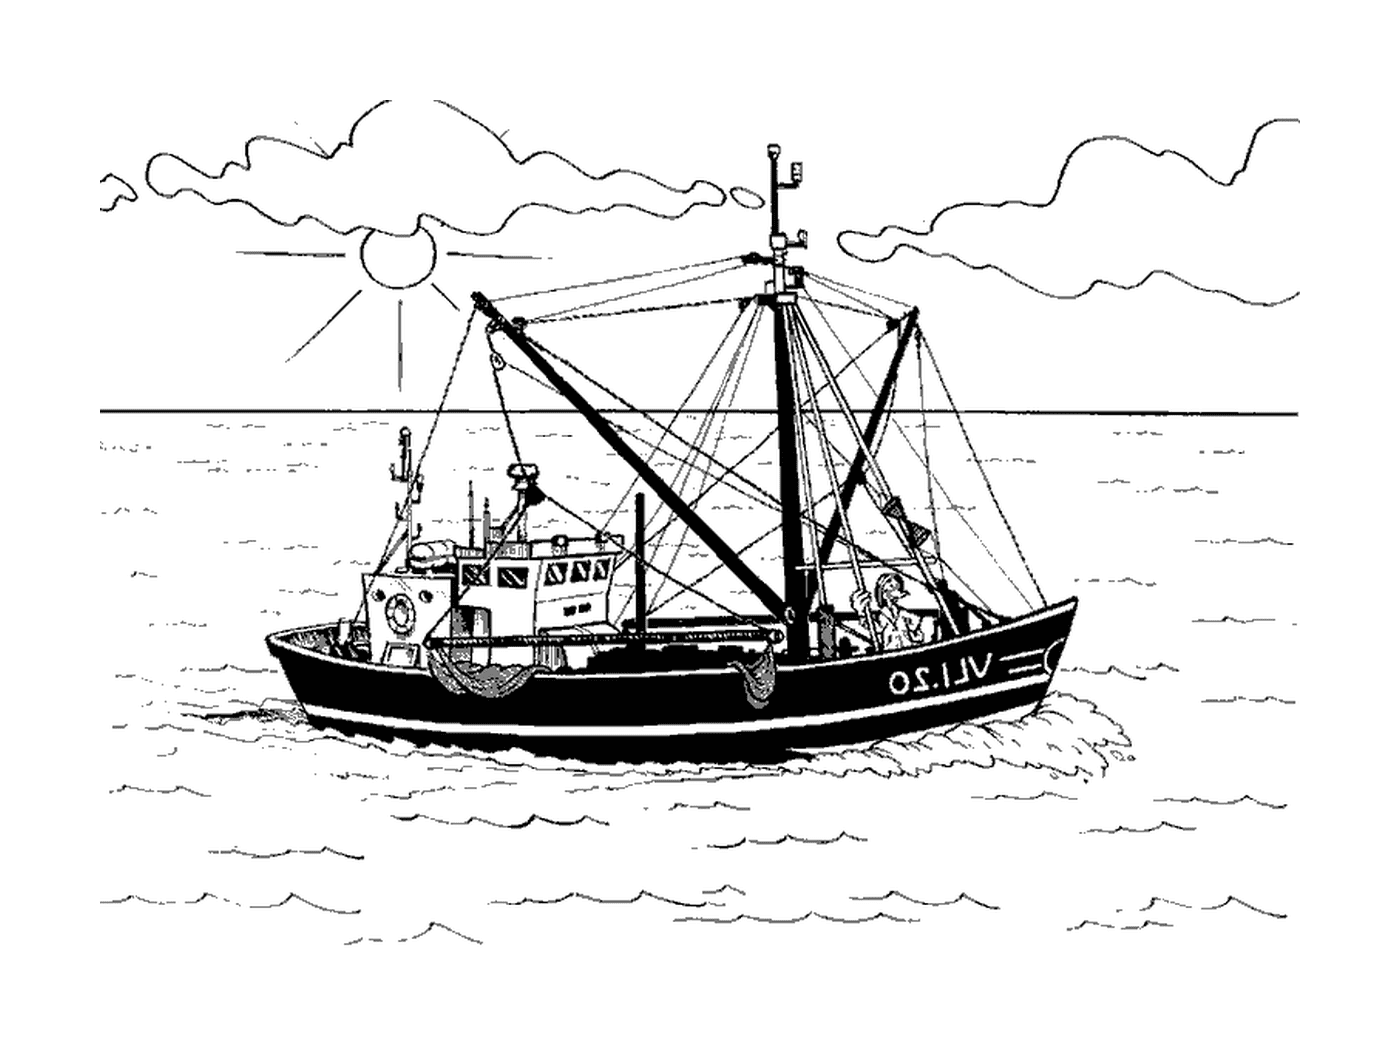  arrasqueiro, barco de pesca 